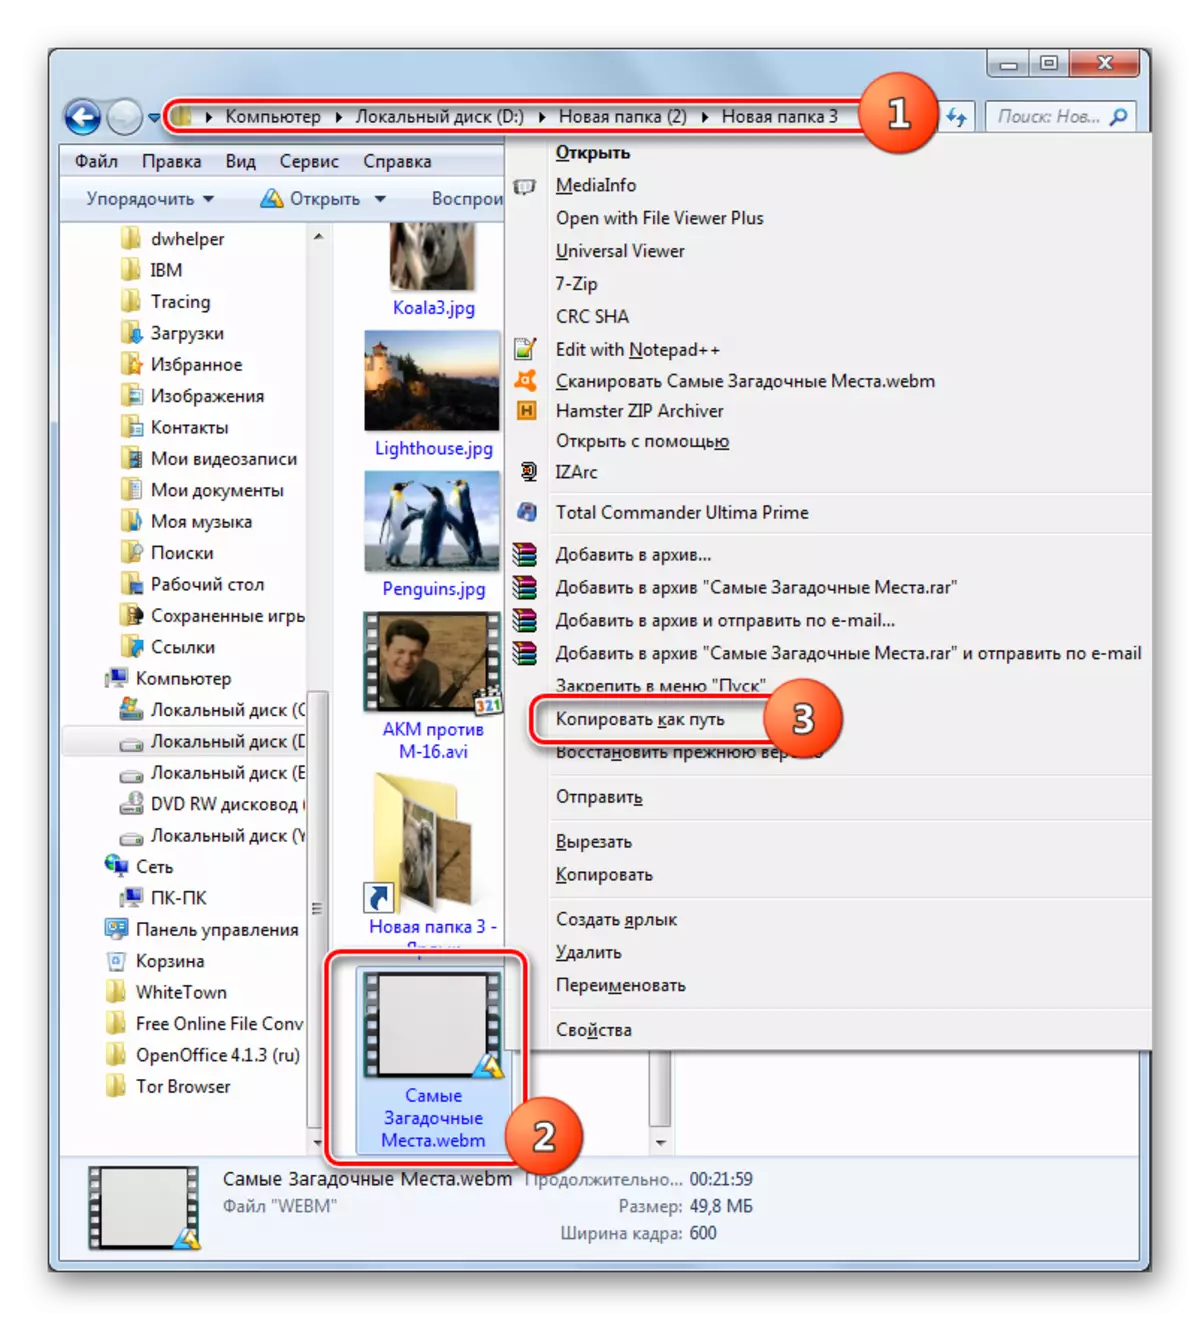 विंडोज एक्सप्लोररच्या संदर्भात वेबएम फाइलला मार्ग कॉपी करणे